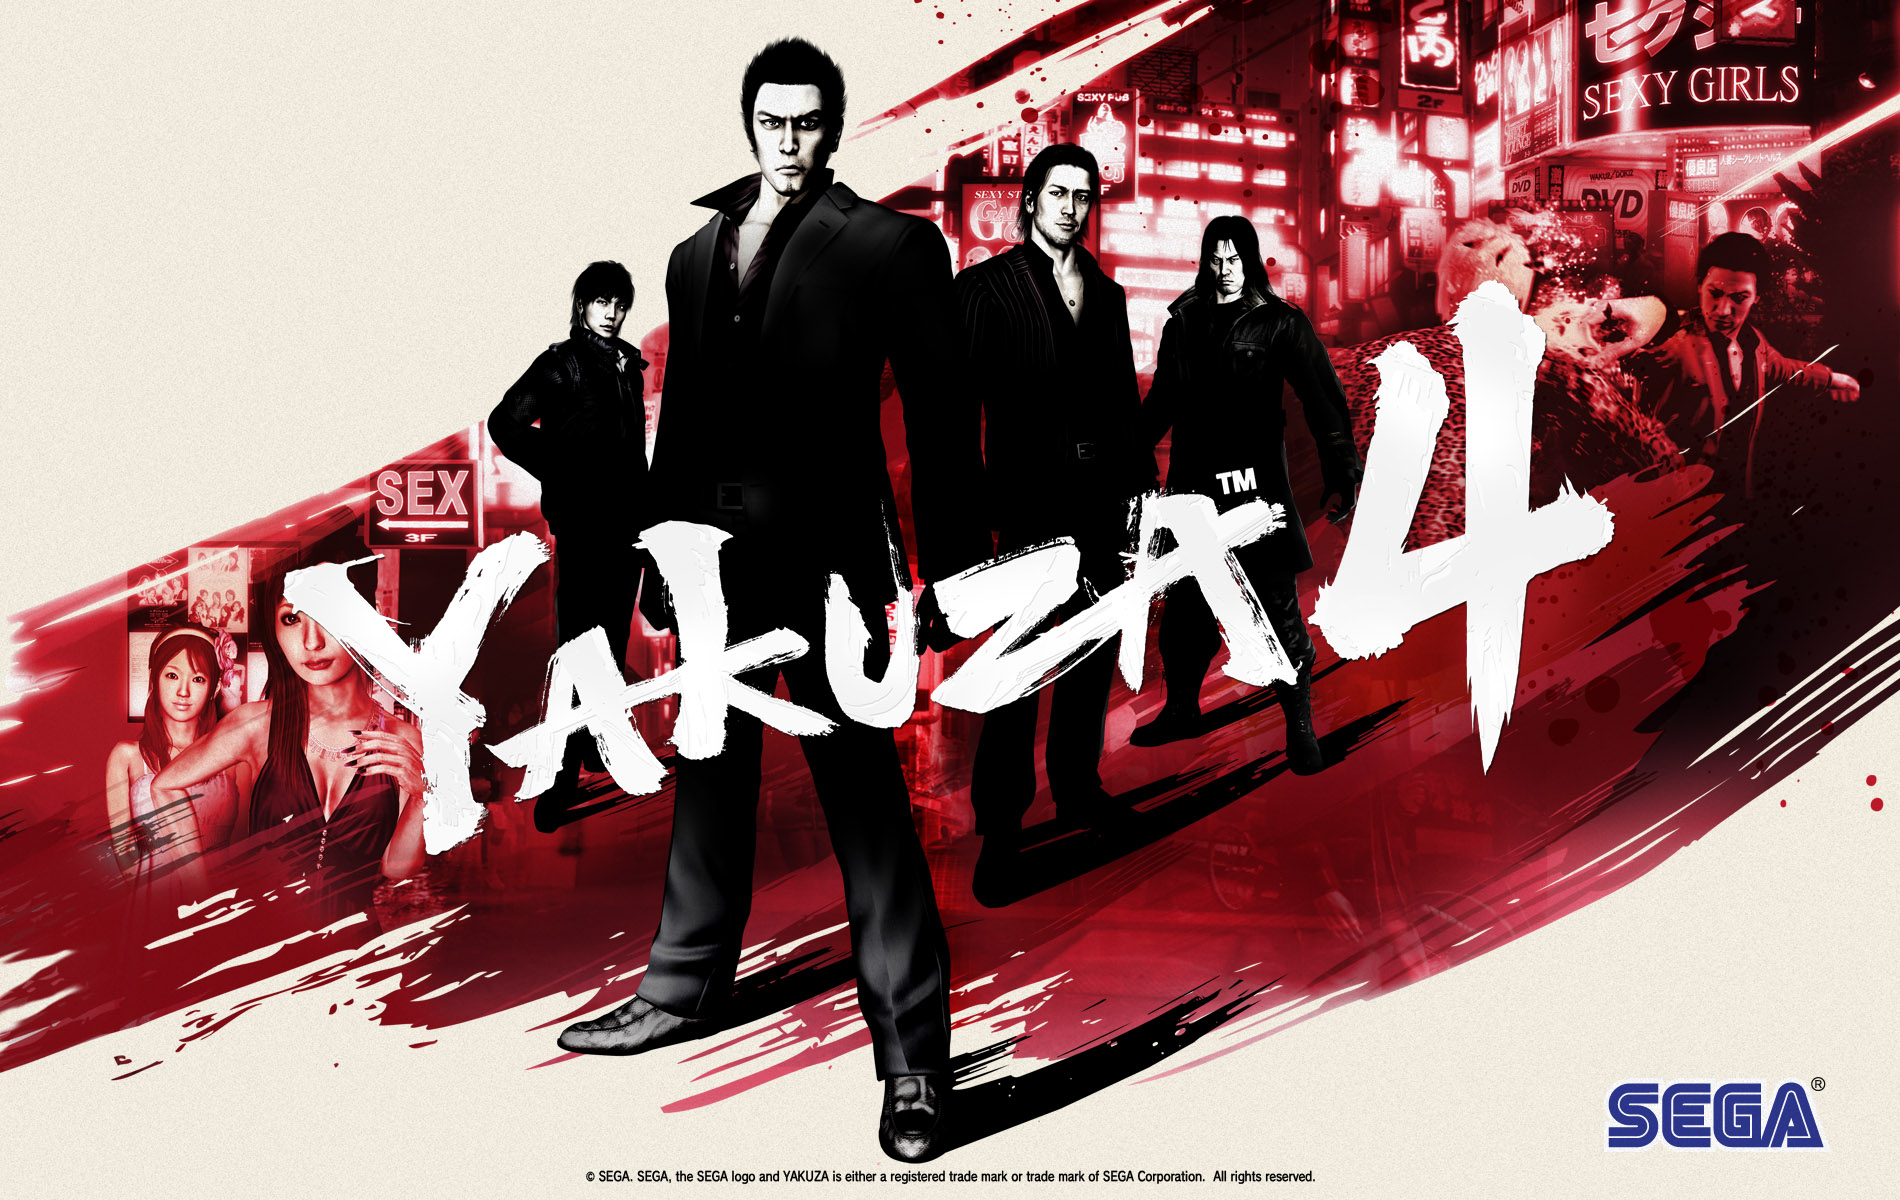 yakuza 4 pc download